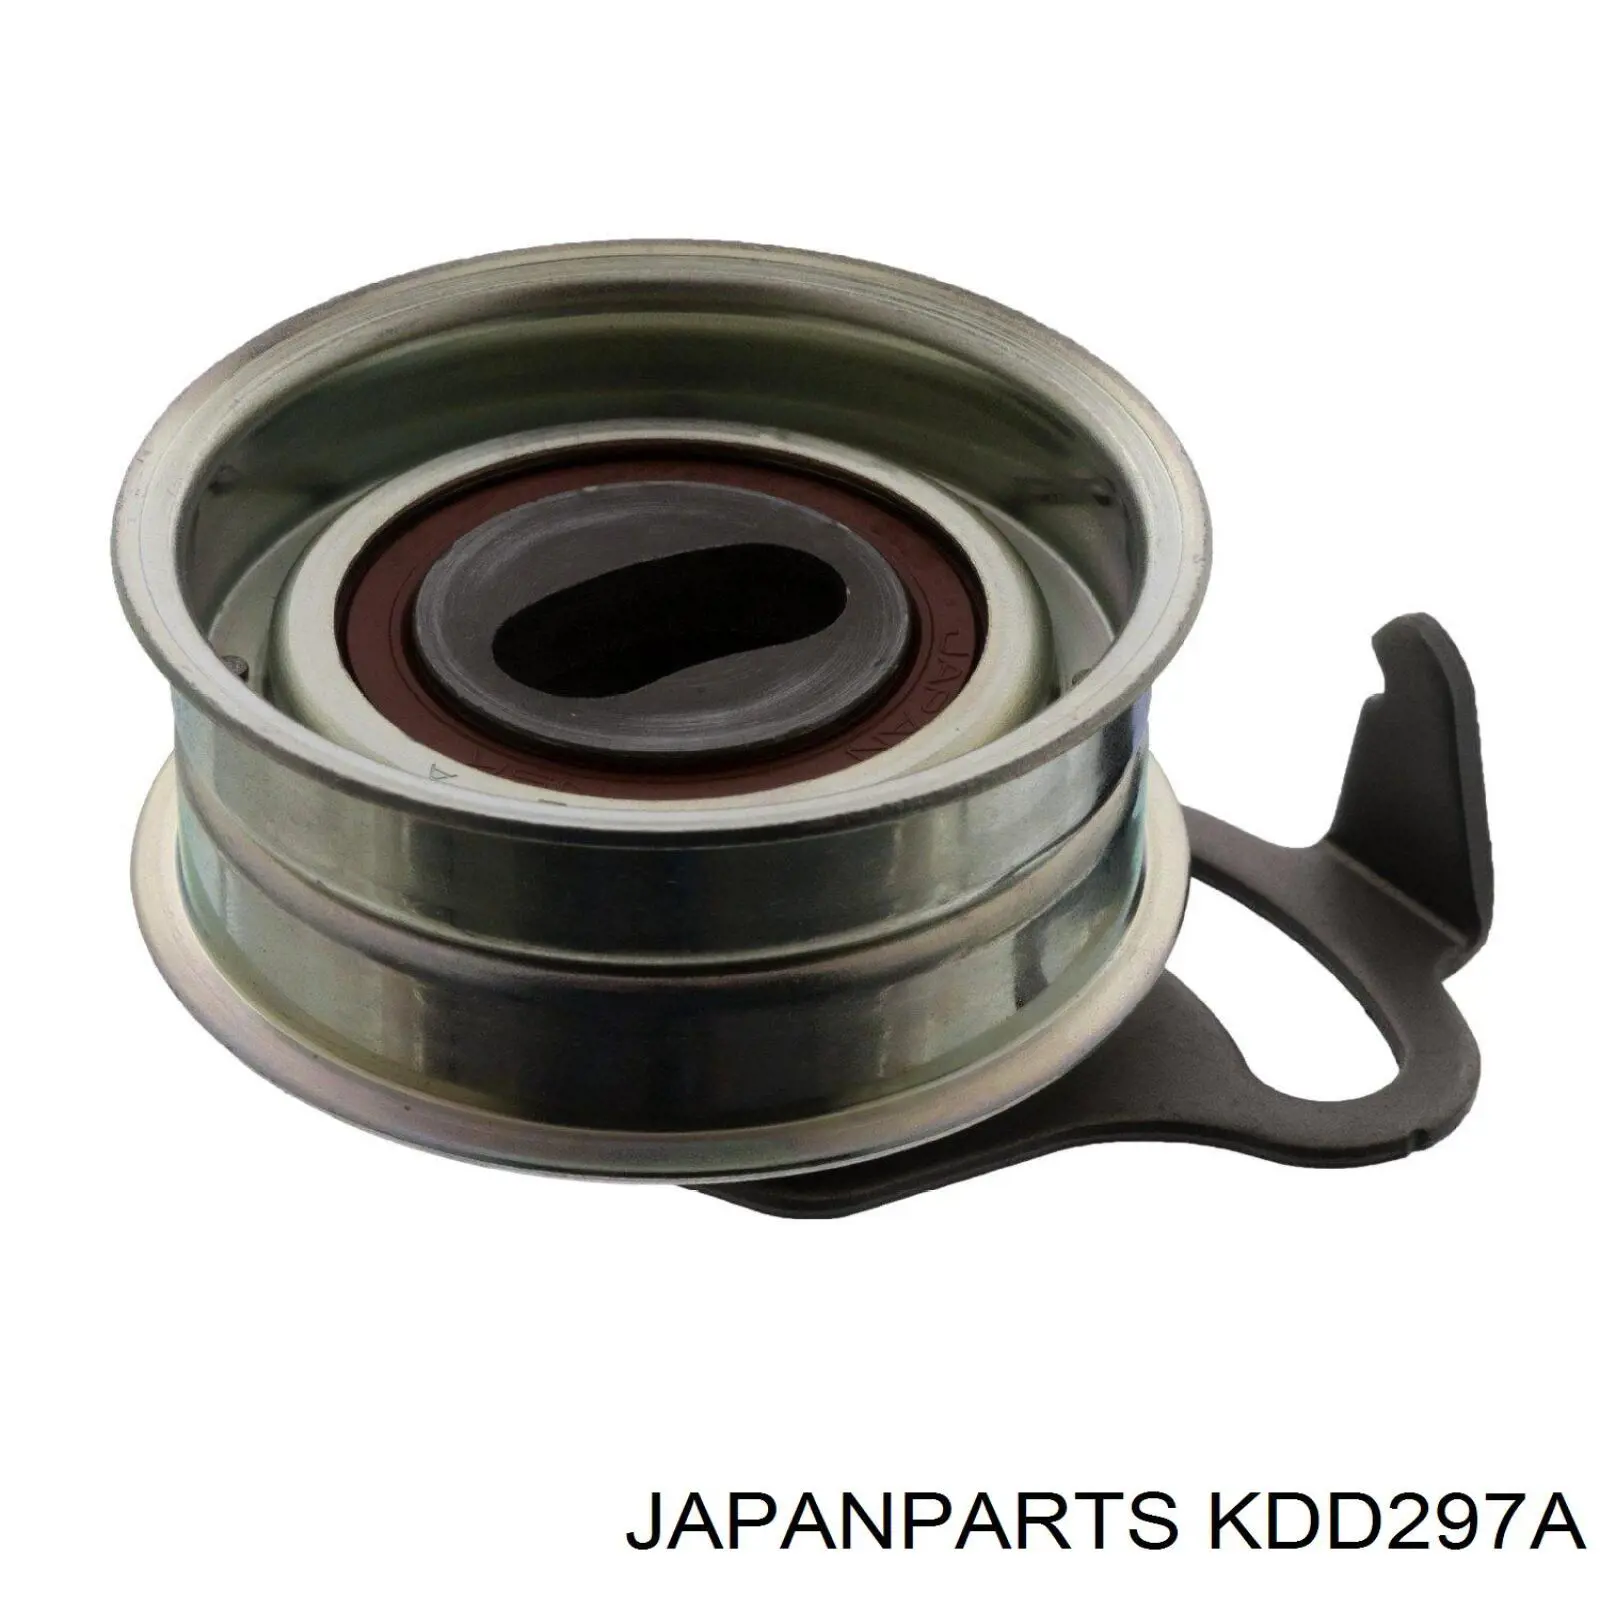 KDD297A Japan Parts kit de distribución